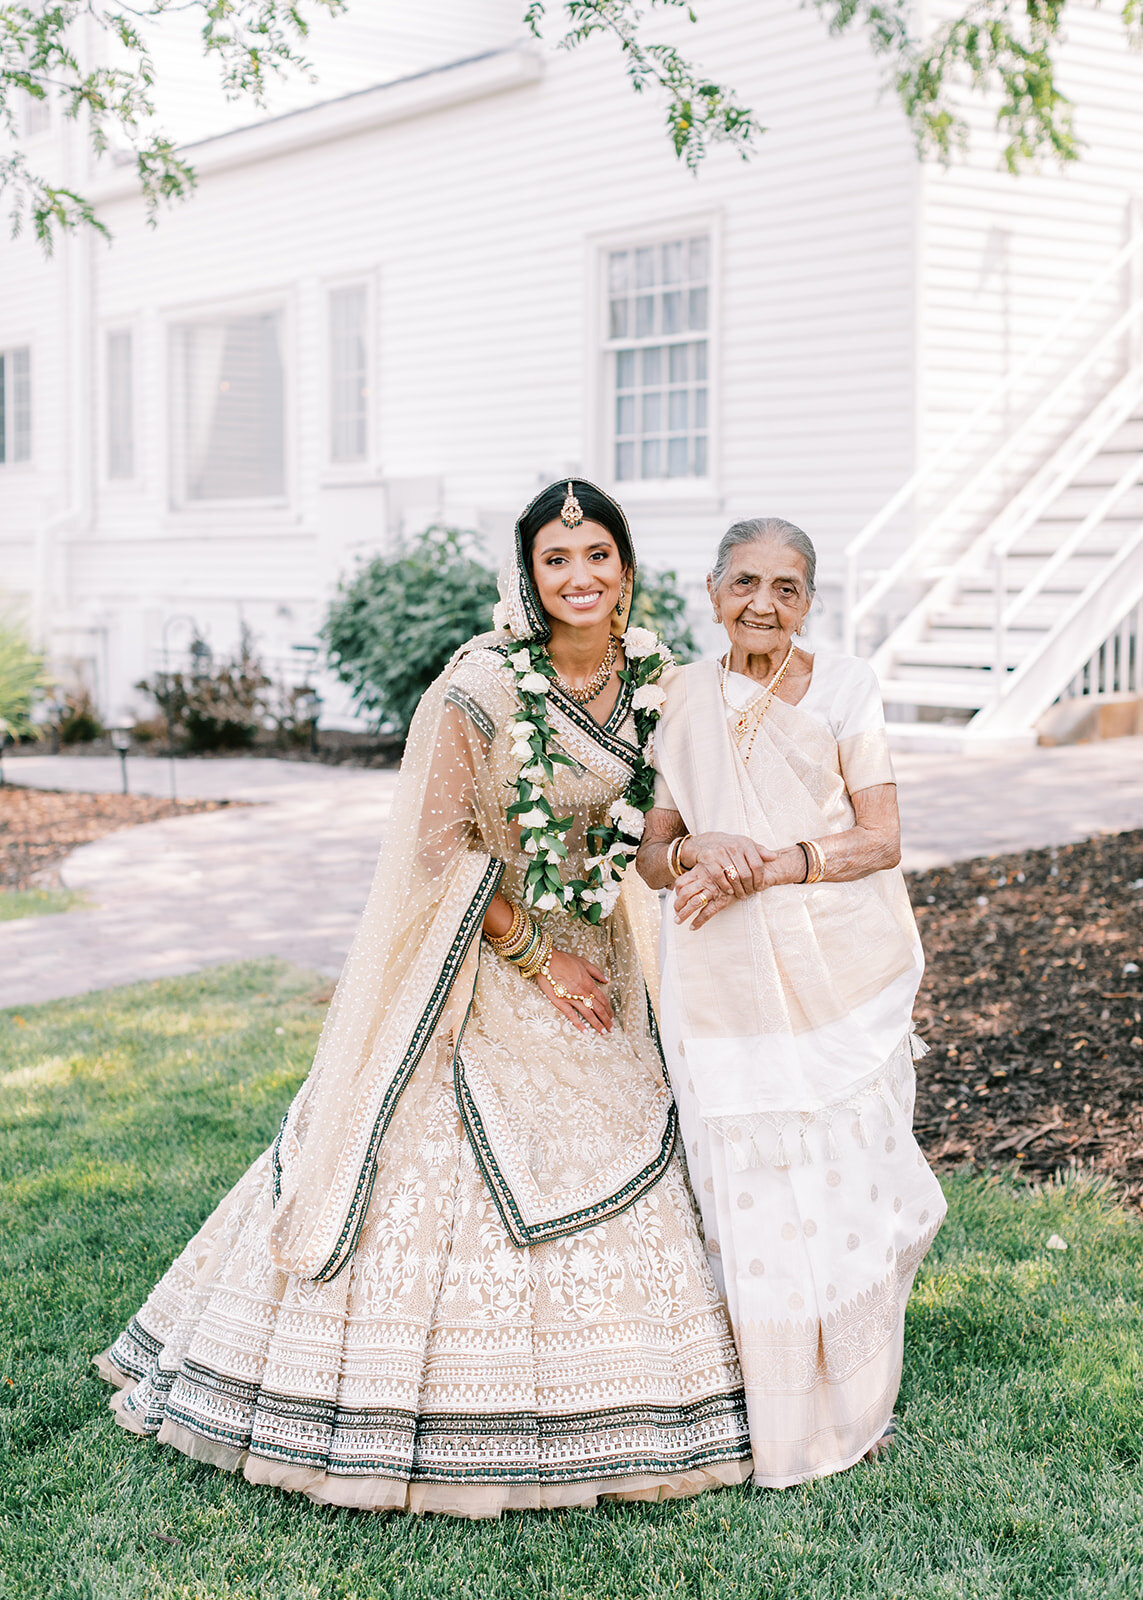 Bridal portraits at a South Asian Fusion wedding